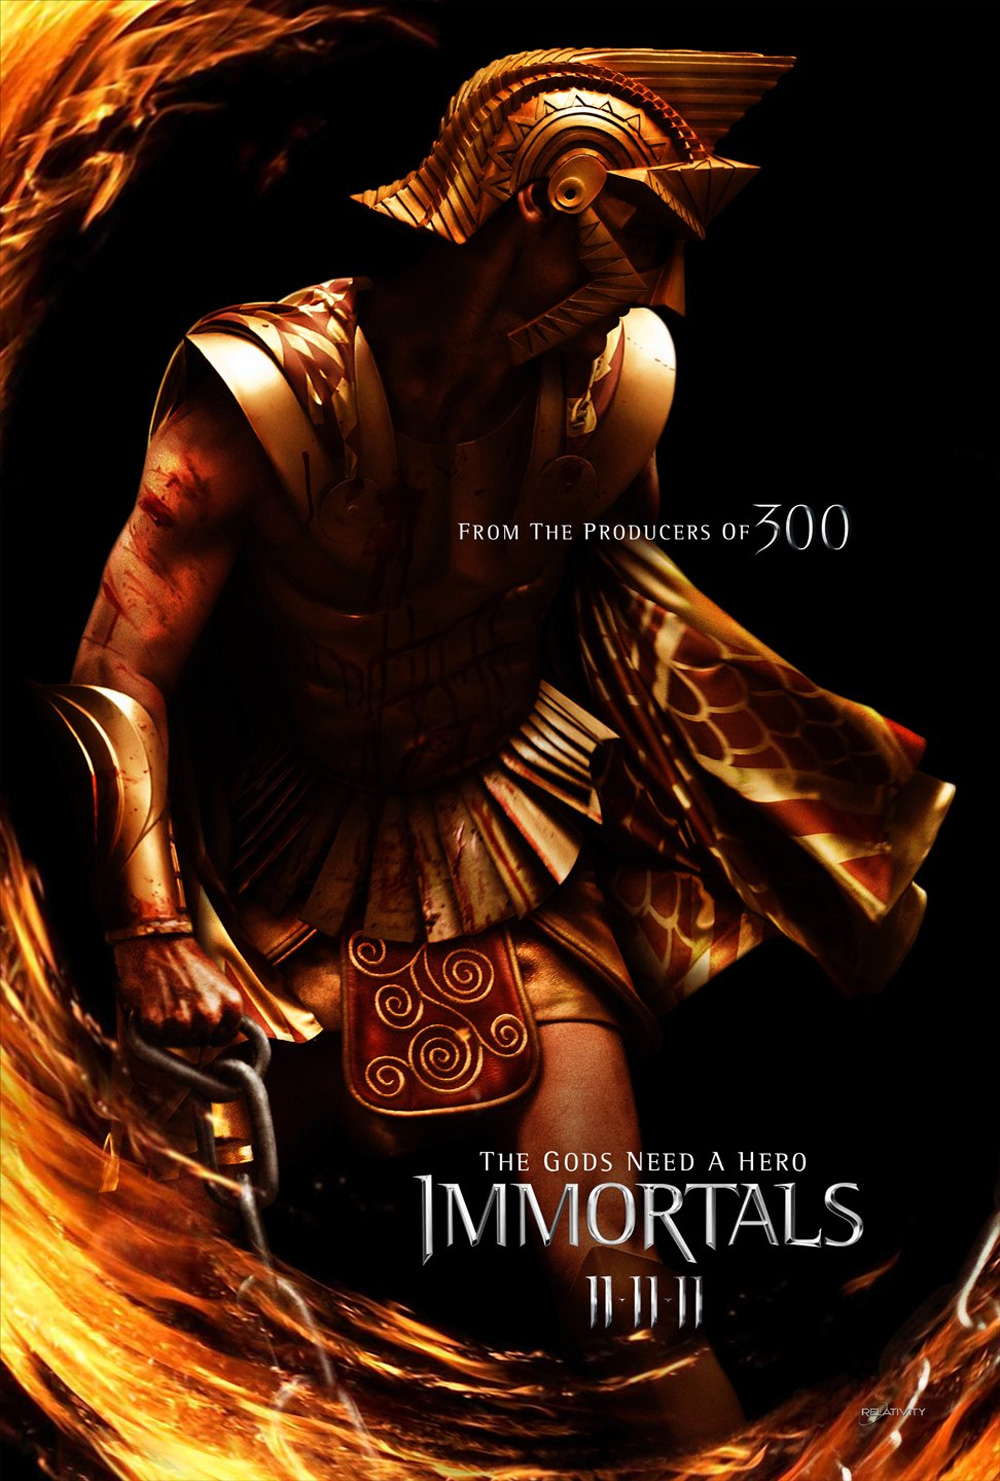 Poster Immortals 3D